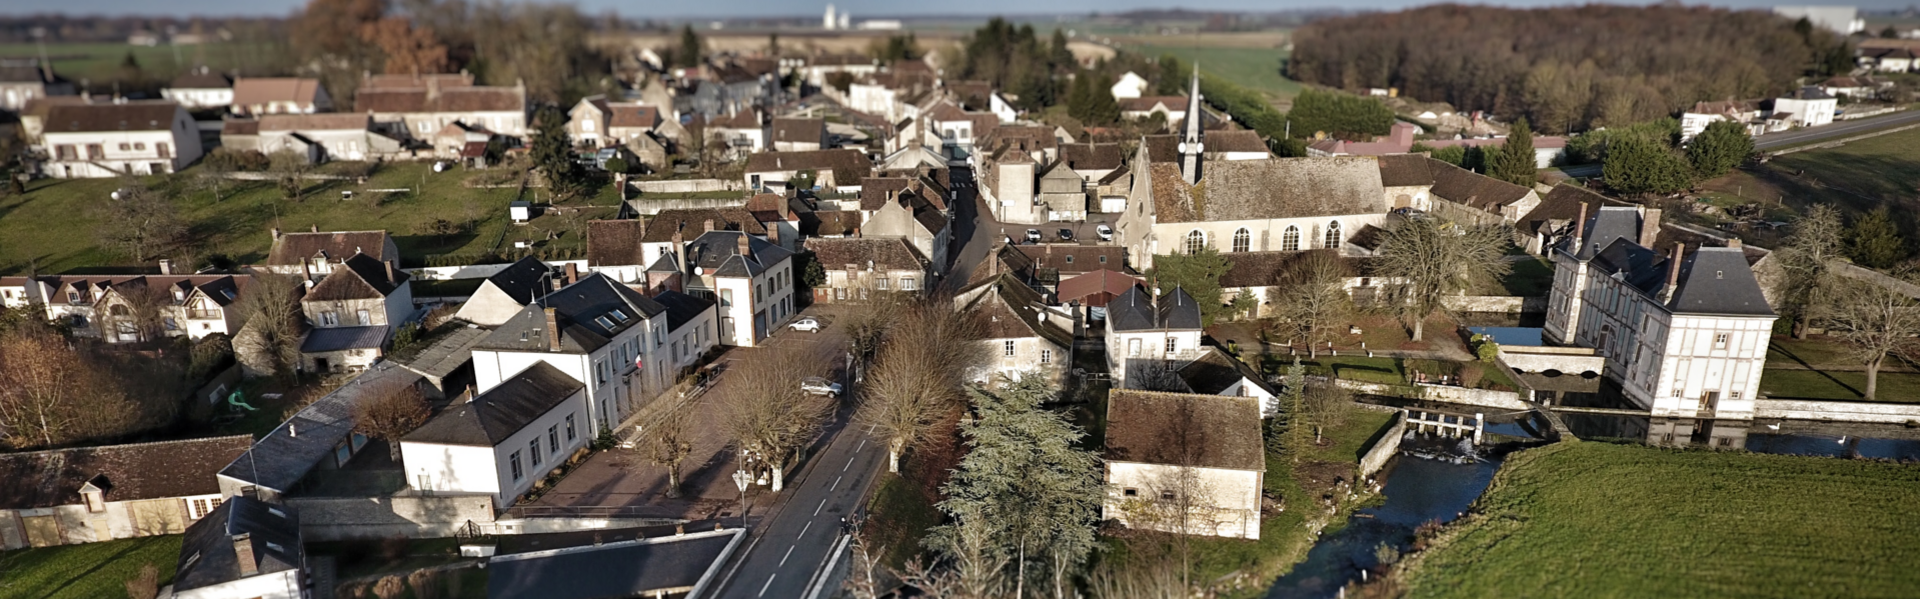 La commune de la Selle-sur-le-Bied dans le Loiret